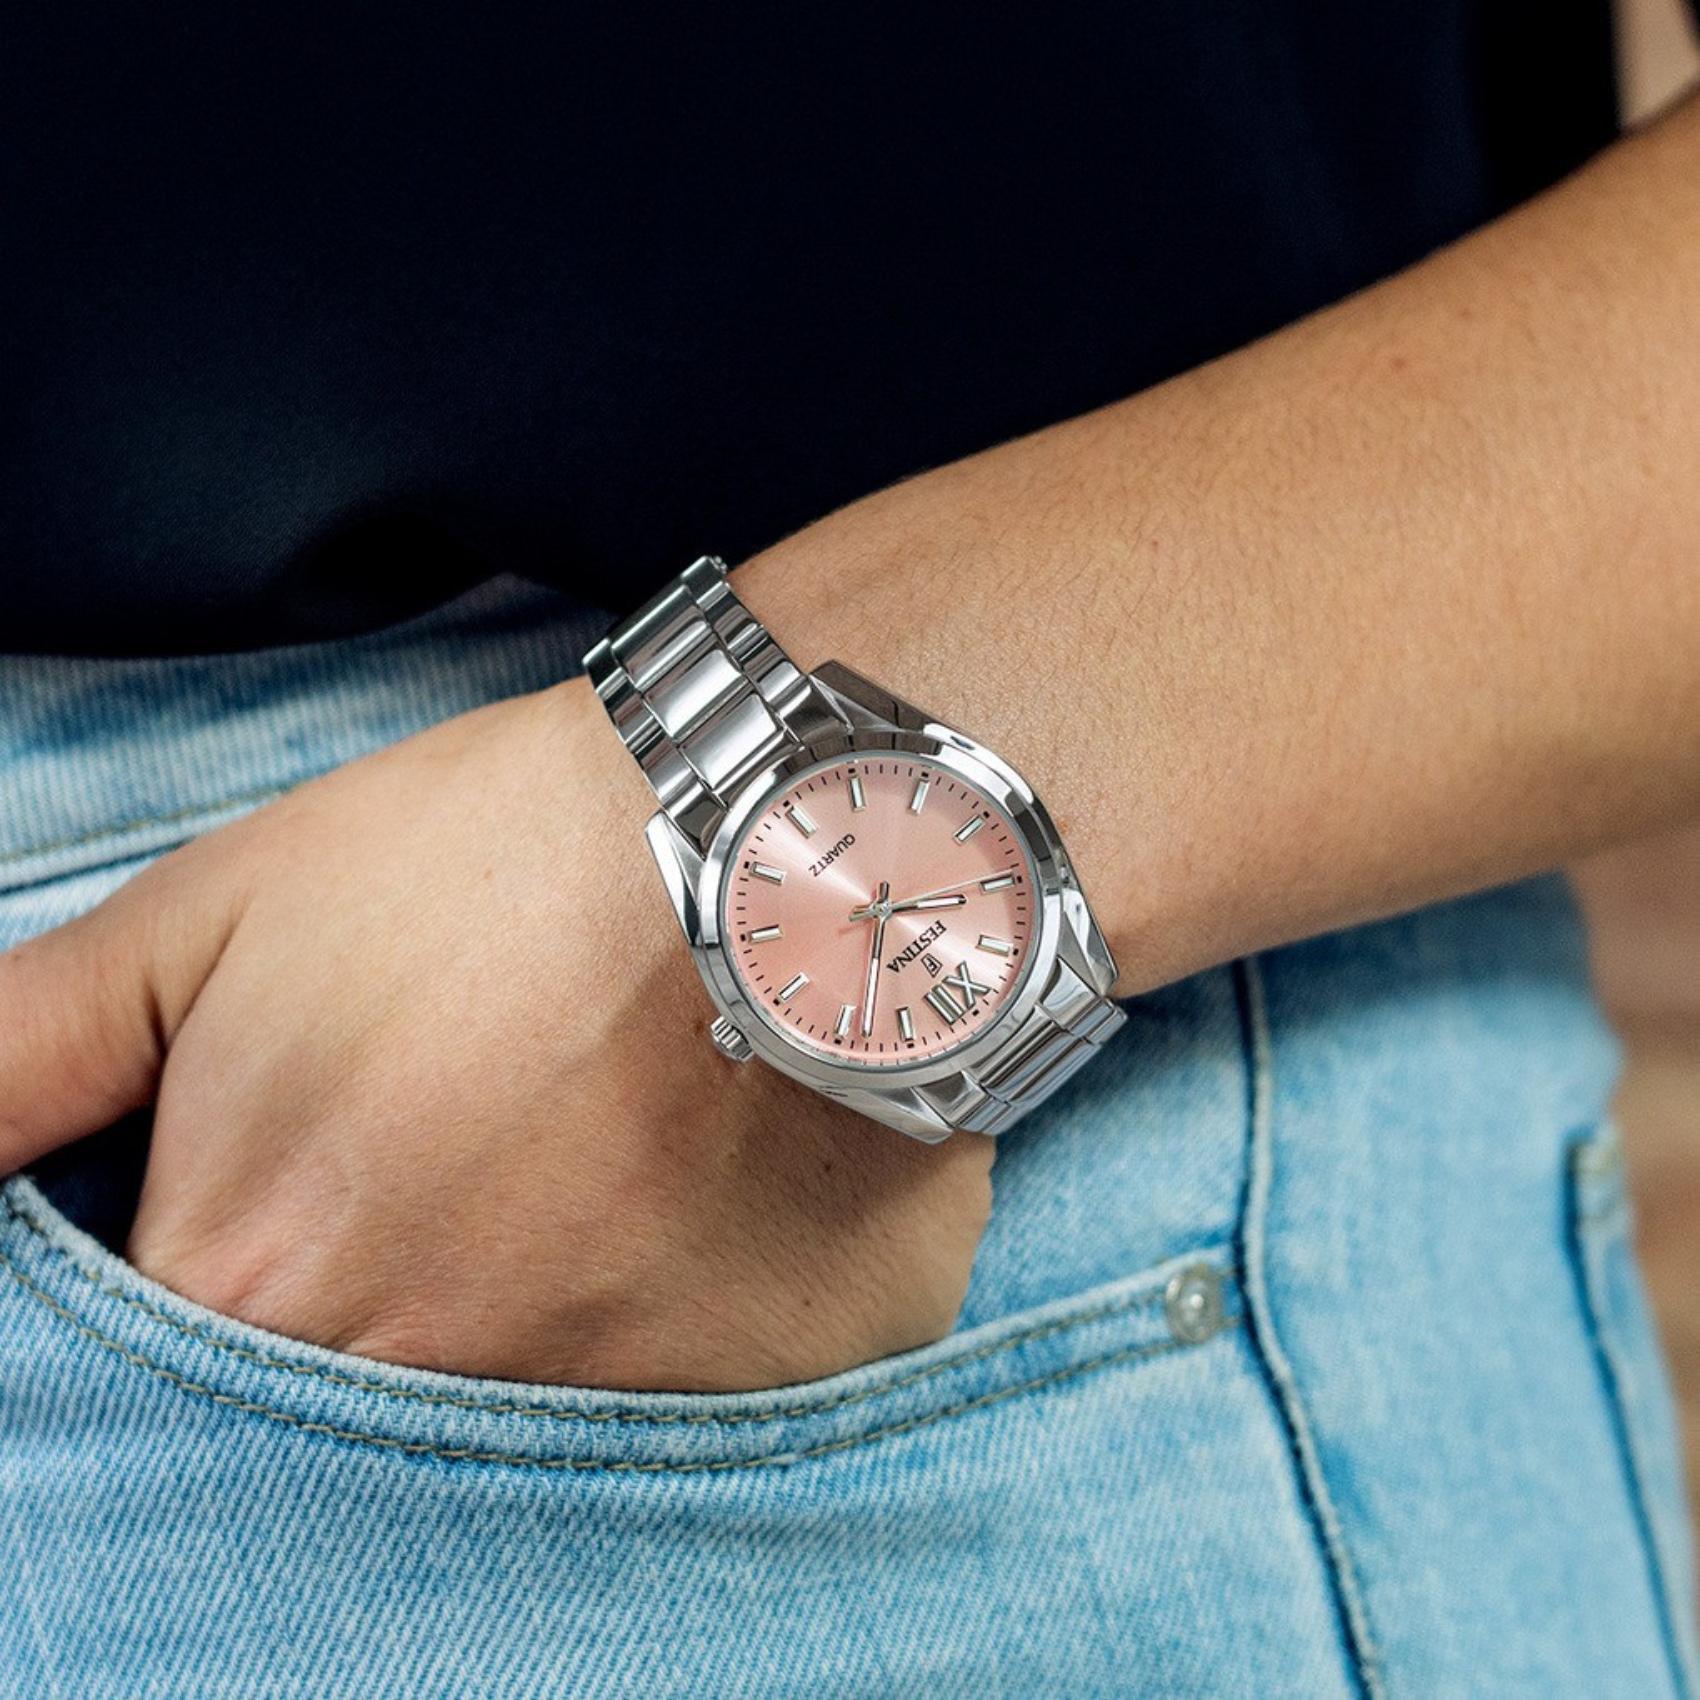 Γυναικείο ρολόι Festina Alegria F20622/2 με ασημί ατσάλινο μπρασελέ, ροζ καντραν, μηχανισμό μπαταρίας στρογγυλό στεφάνι με διάμετρο 37mm, αδιάβροχο στις 5ΑΤΜ-50Μ.